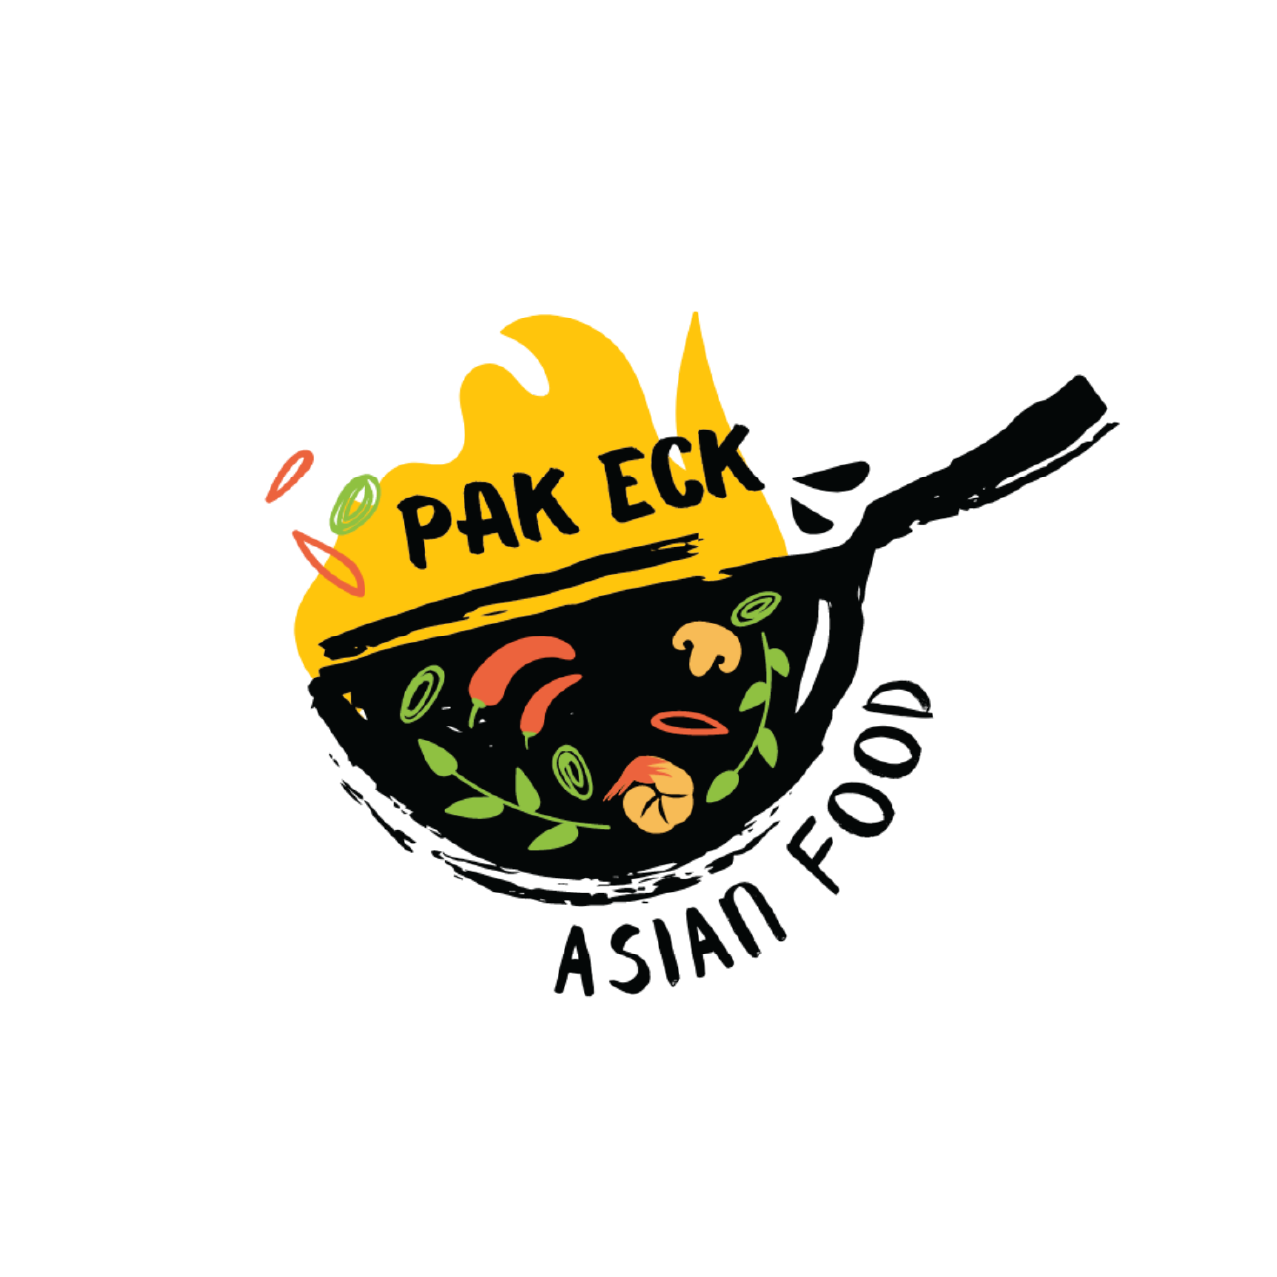 Pak Eck Asian Food